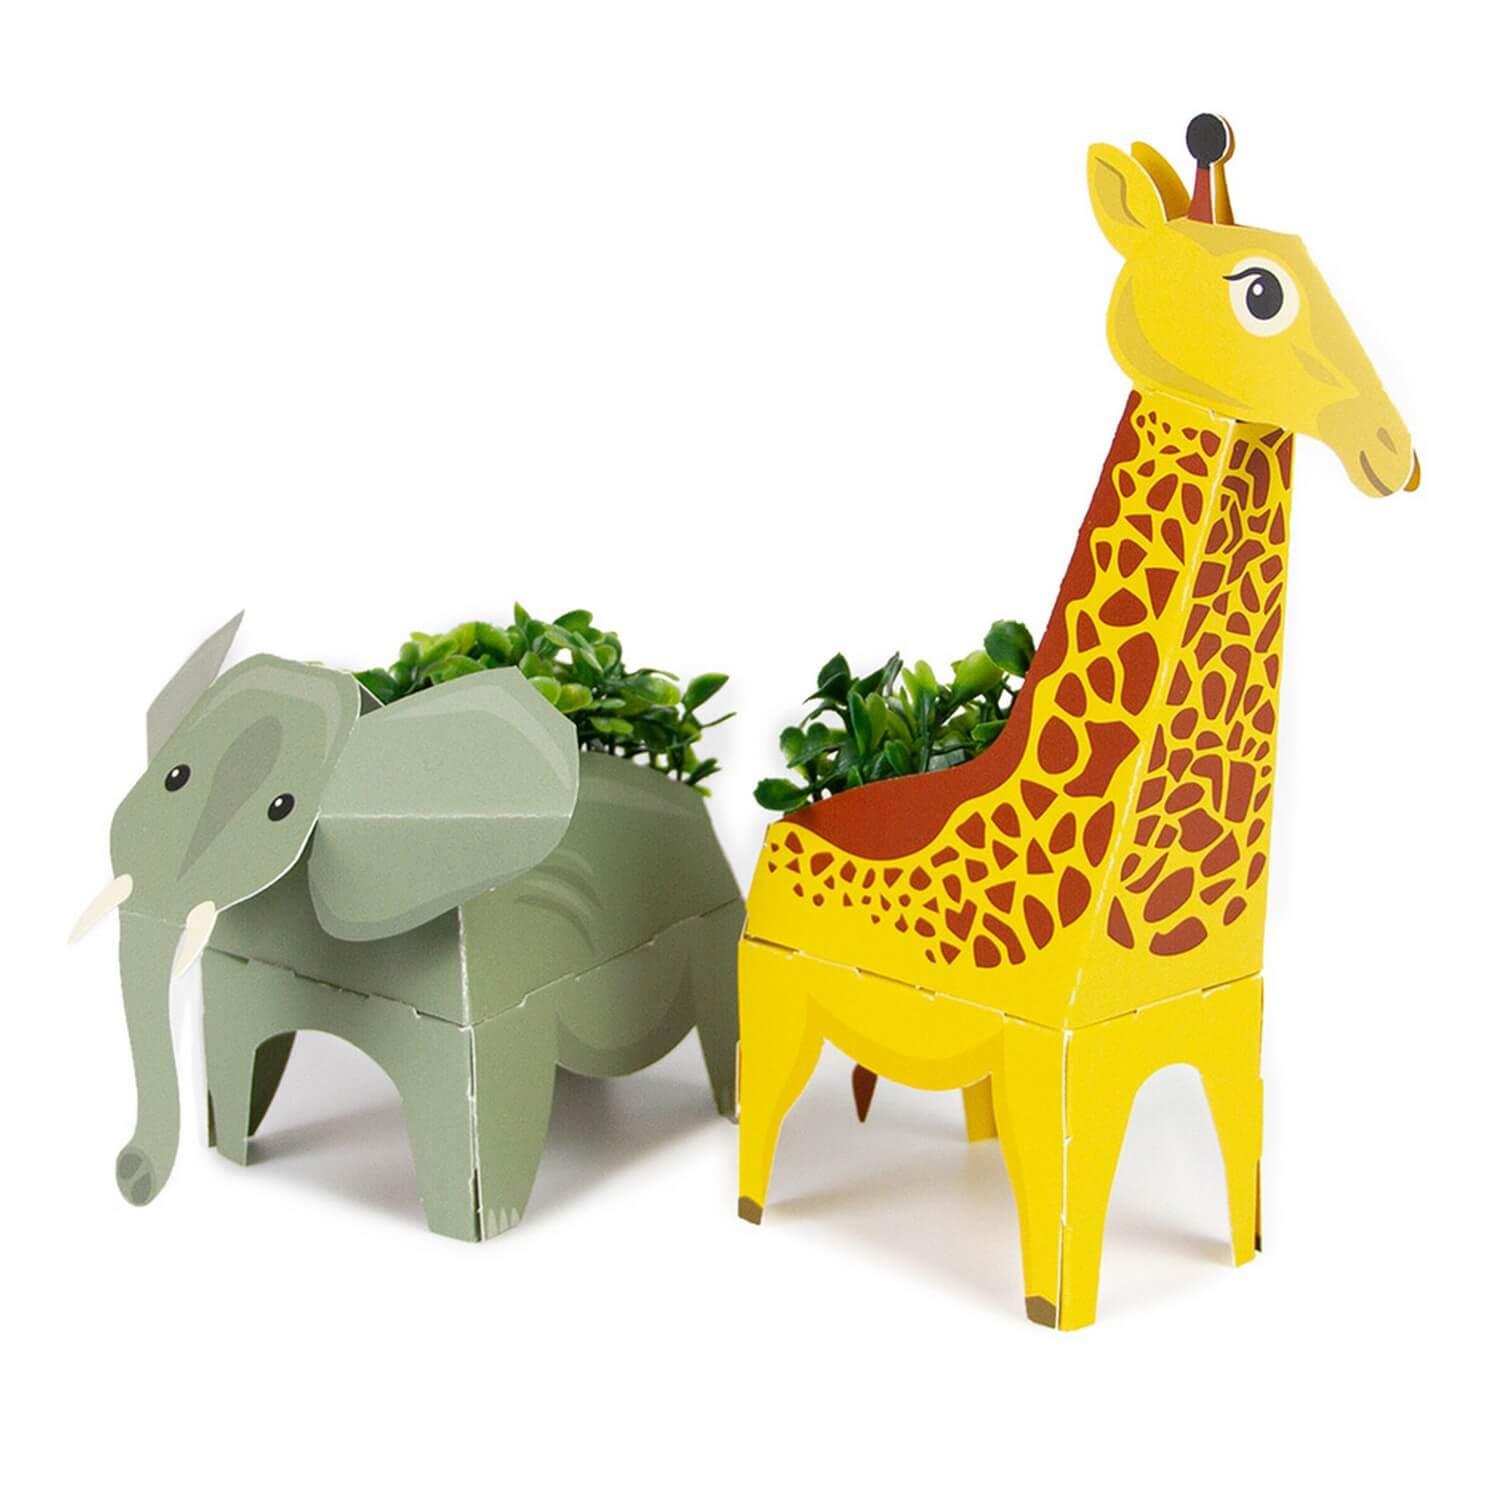 Kit de jardinage : Animaux Pop Up : Girafe et Éléphant